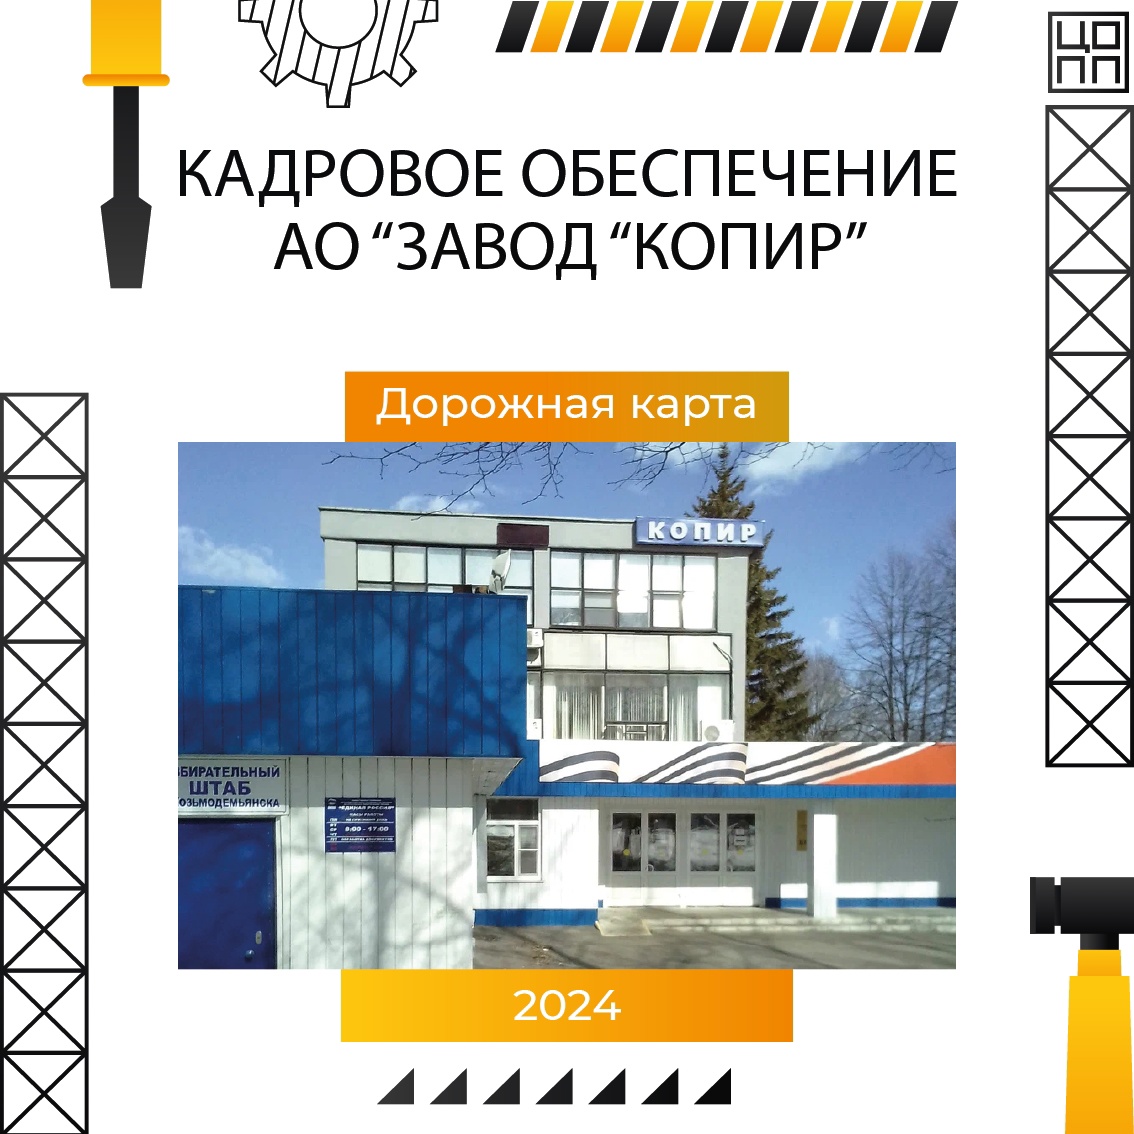 ЦОПП 12: Реализация дорожной карты по обеспечению кадровой потребности завода «Копир» продолжается